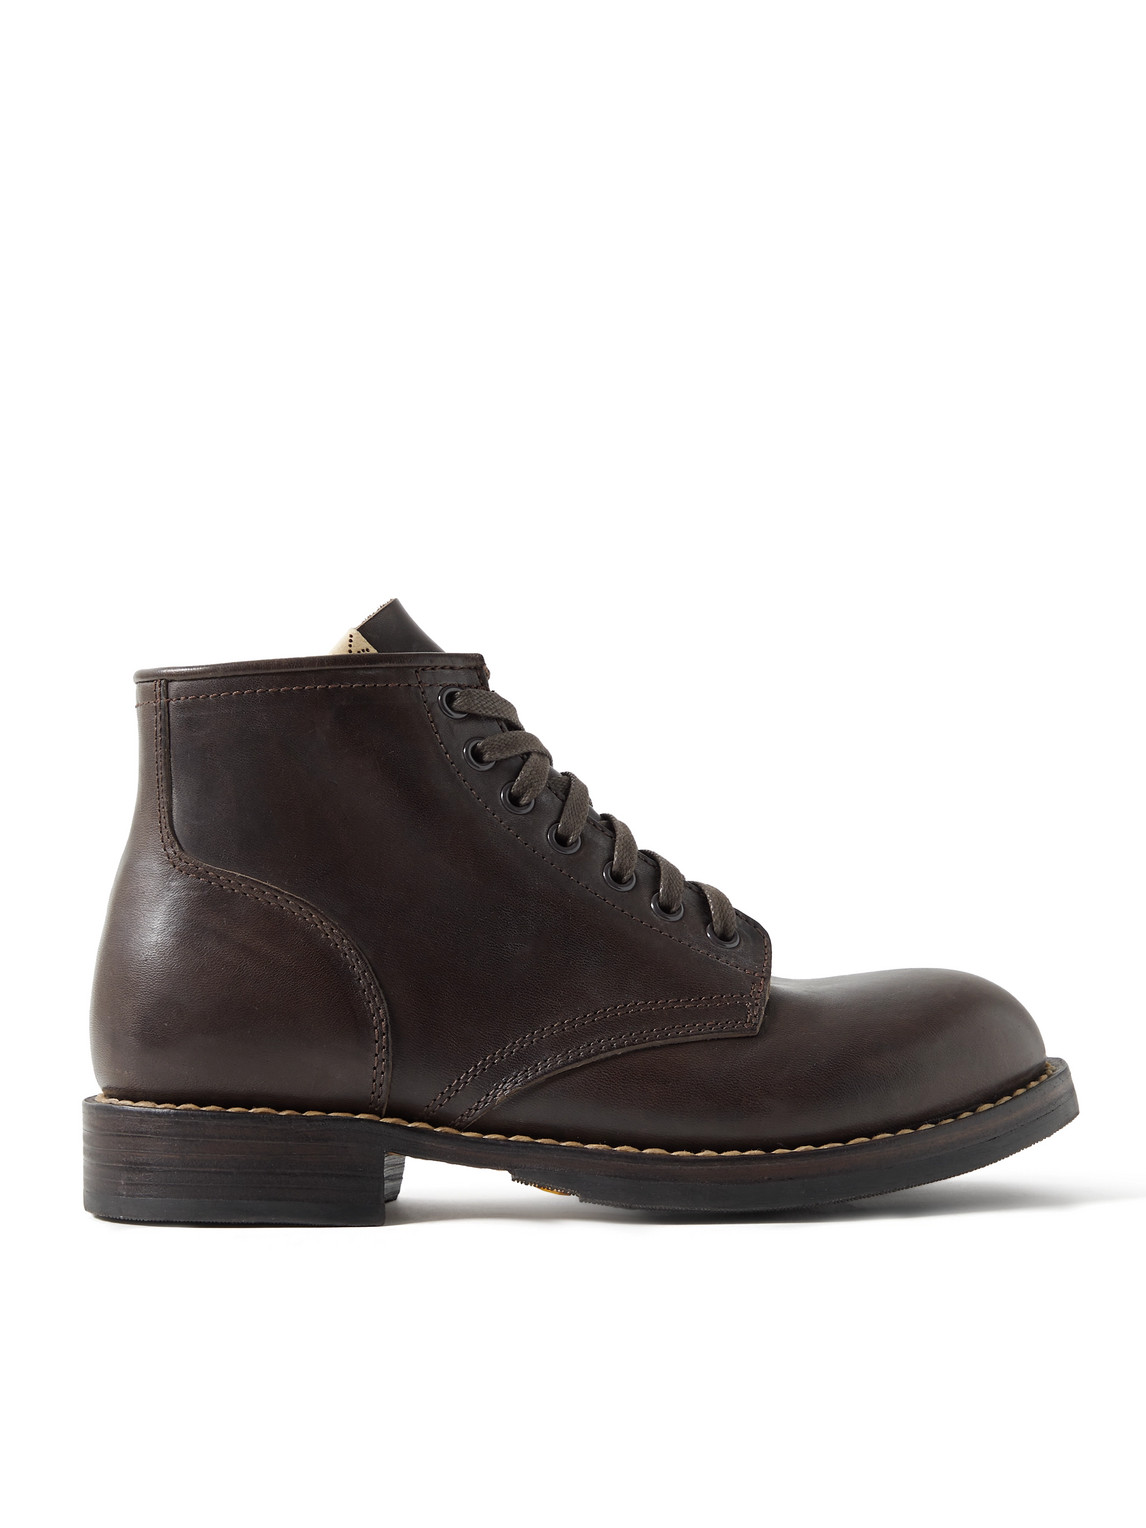 Visvim - Brigadier Folk Leather Boots - Men - Brown - US 8 von Visvim